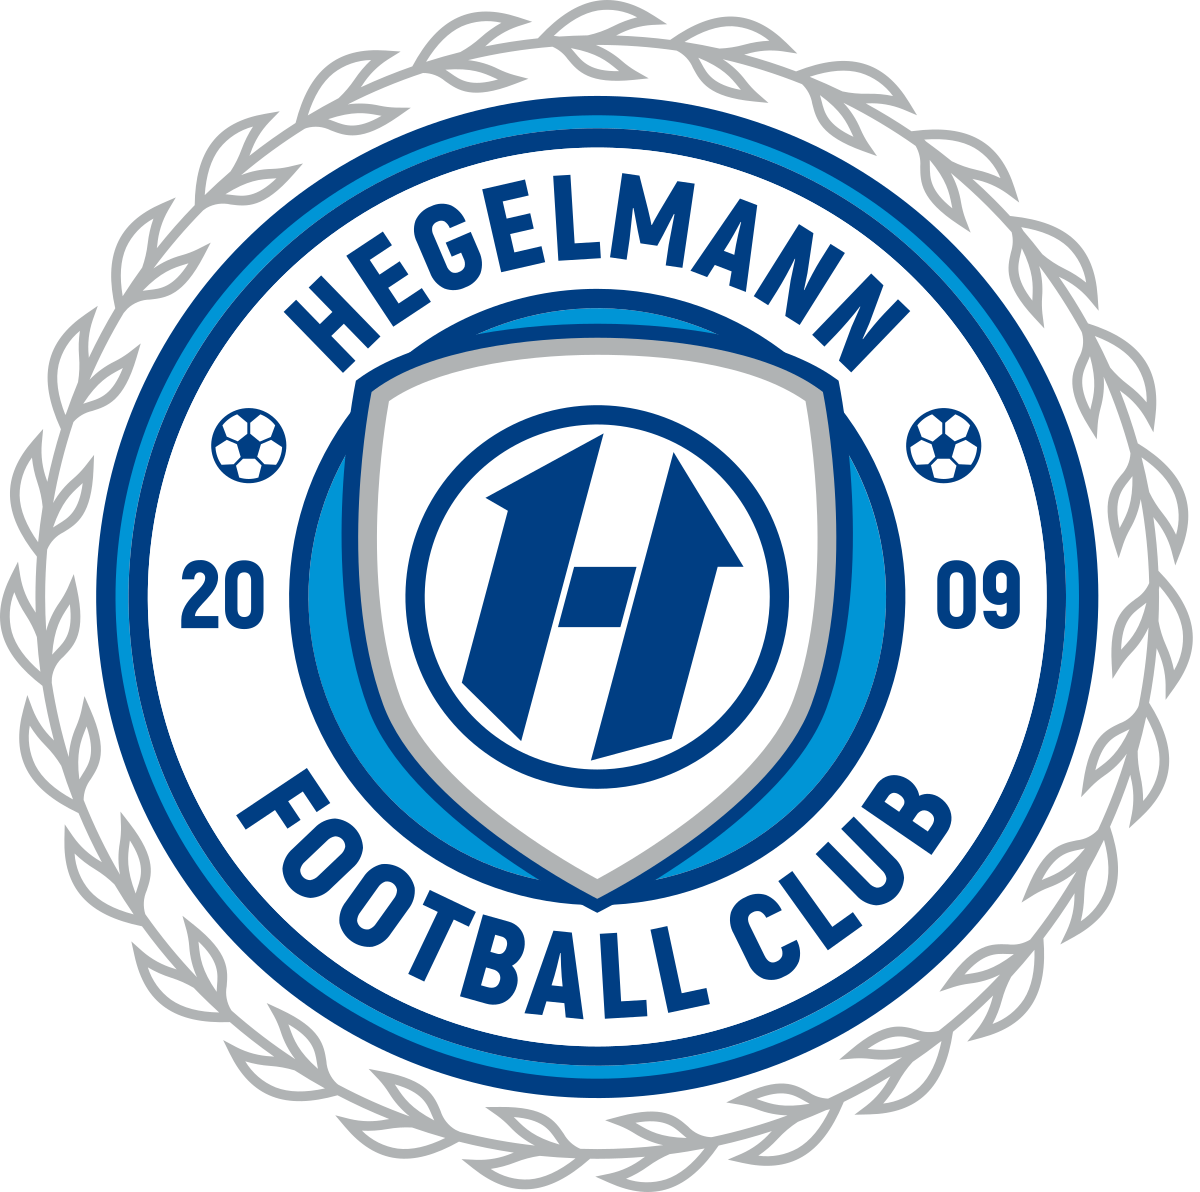 Hegelmann Litauen-2 logo